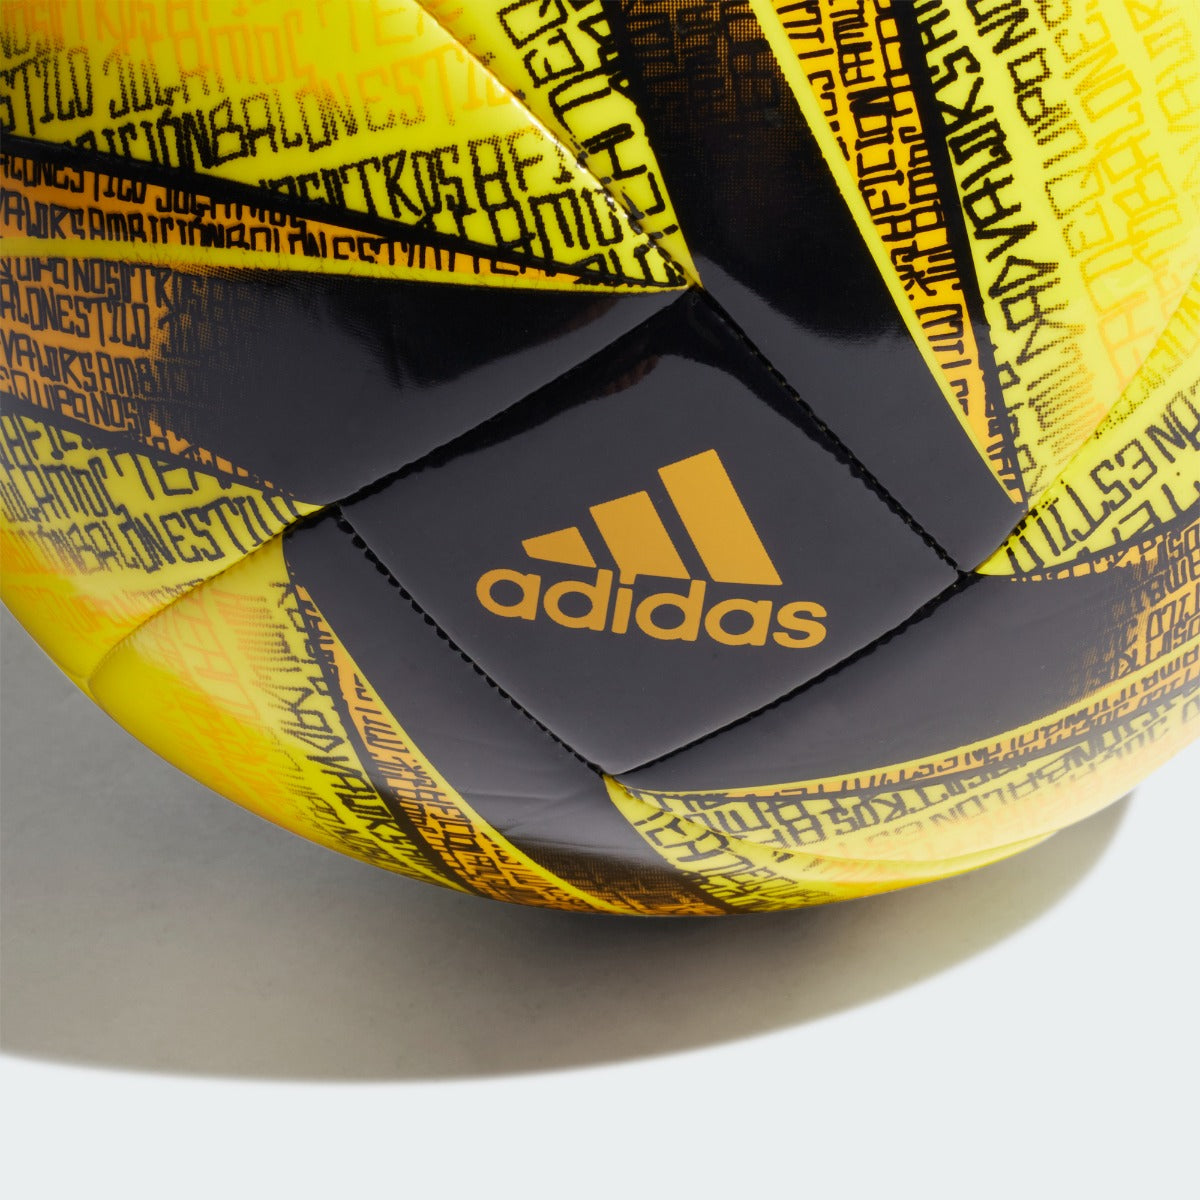 Adidas Messi Club Ball - Yellow-Black (Detail 2)